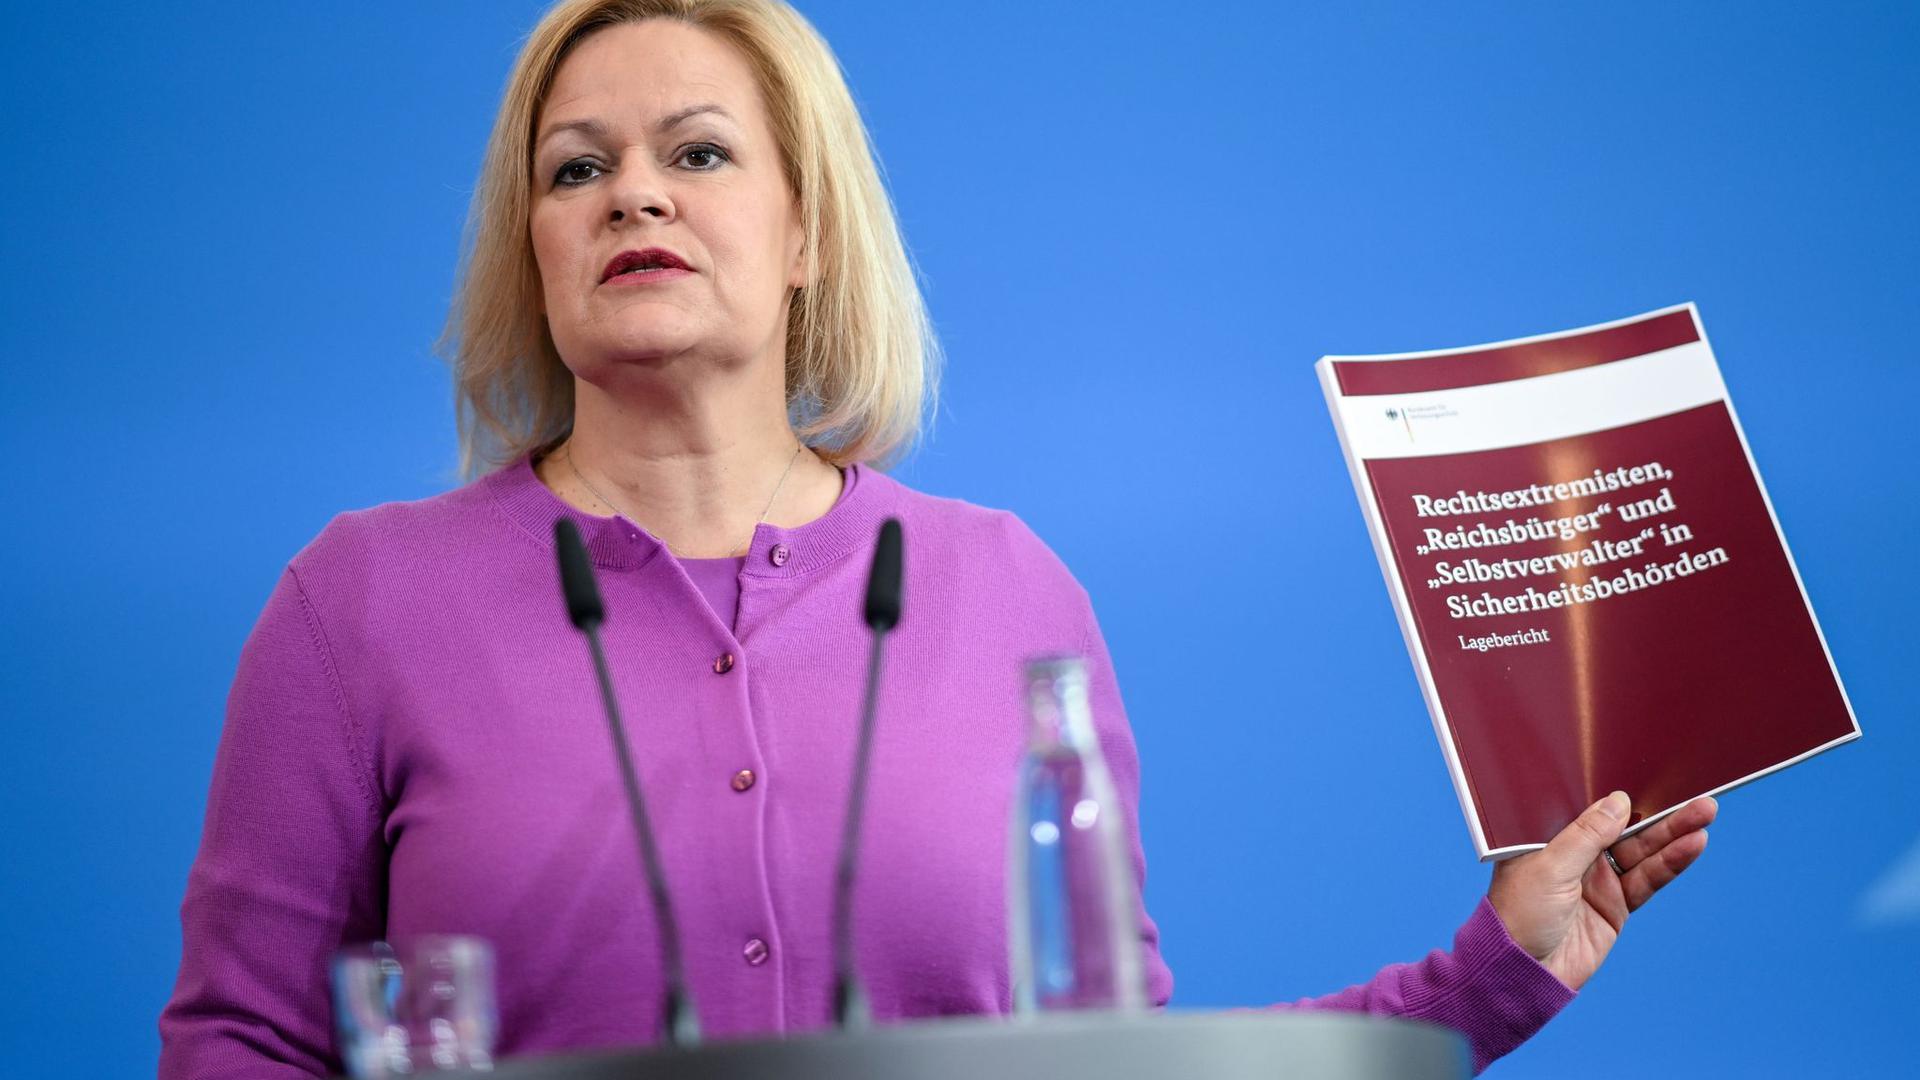 Innenministerin Nancy Faeser (SPD) informiert über den neuen Bericht zu Rechtsextremisten in Sicherheitsbehörden.